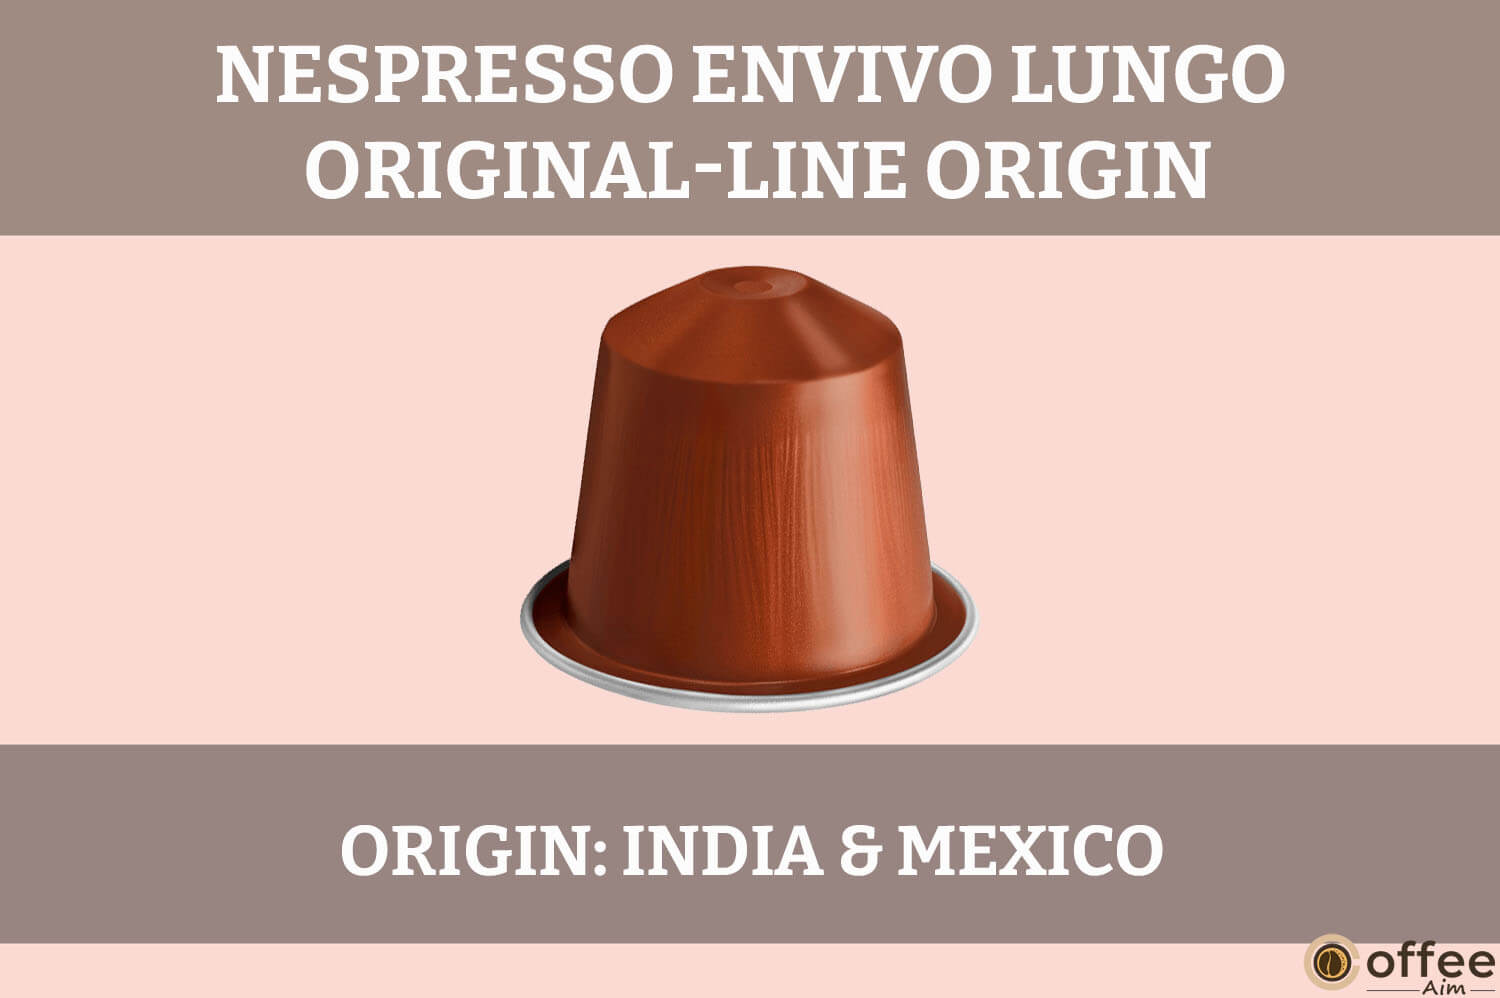 Nespresso Envivo Lungo Original-Line Review